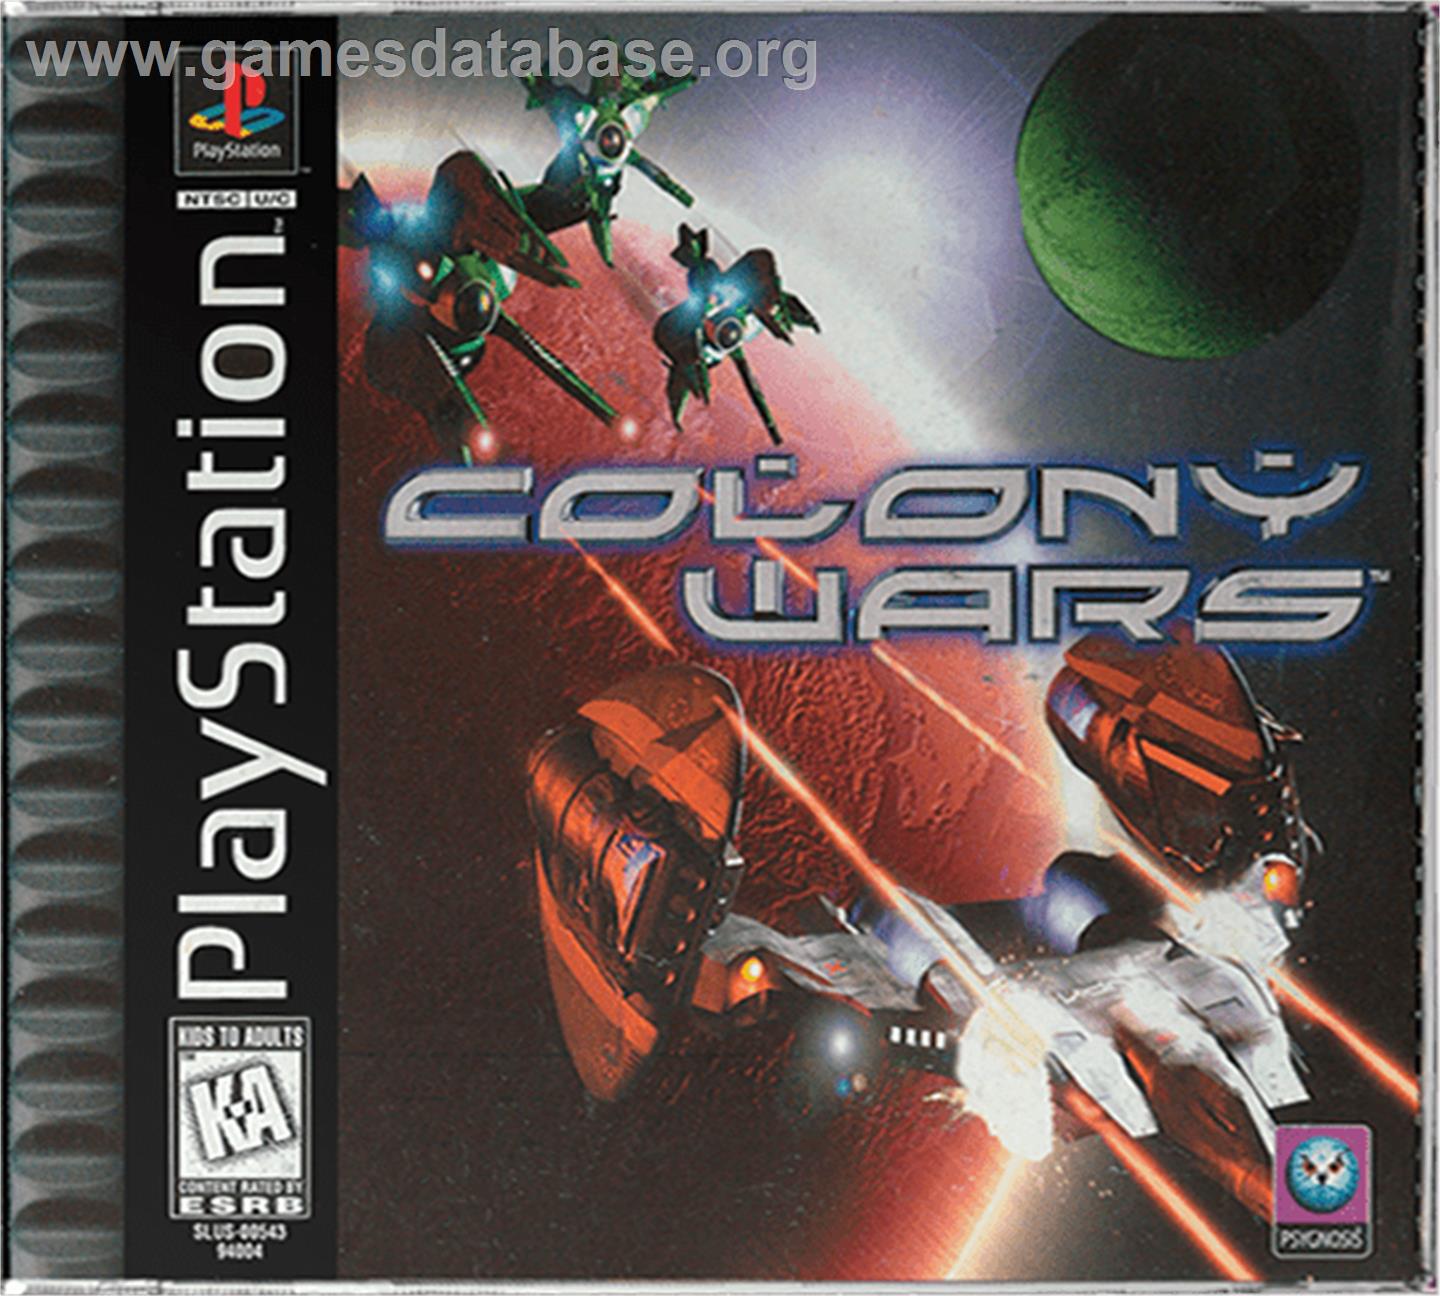 Colony Wars: Vengeance - Sony Playstation - Artwork - Box